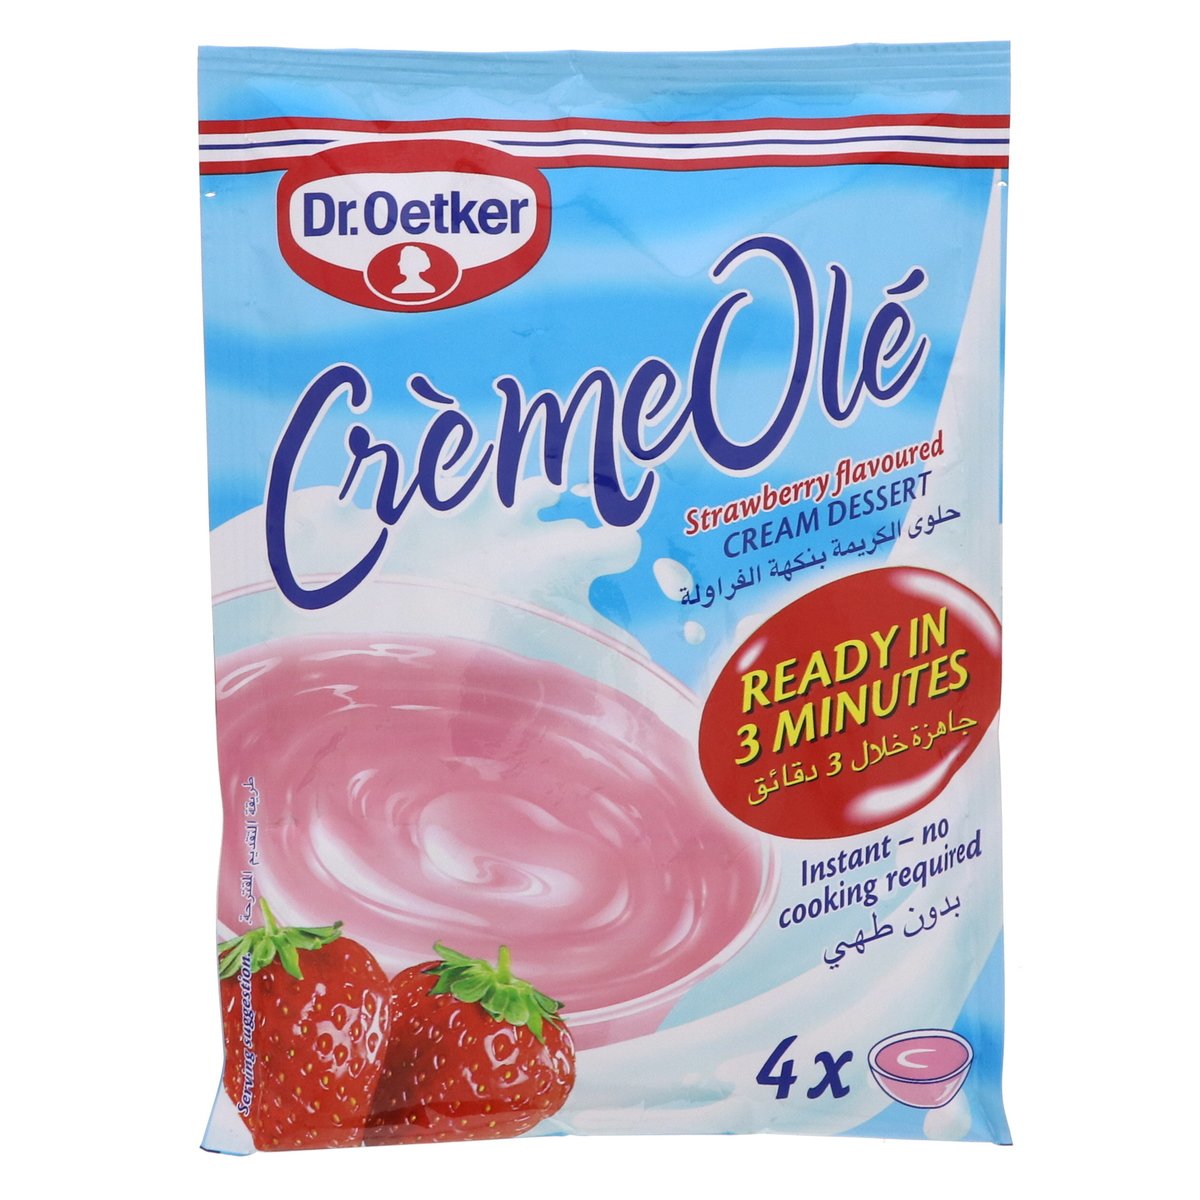 Dr. Oetker CremeOle Strawberry Flavoured Cream Dessert 110g